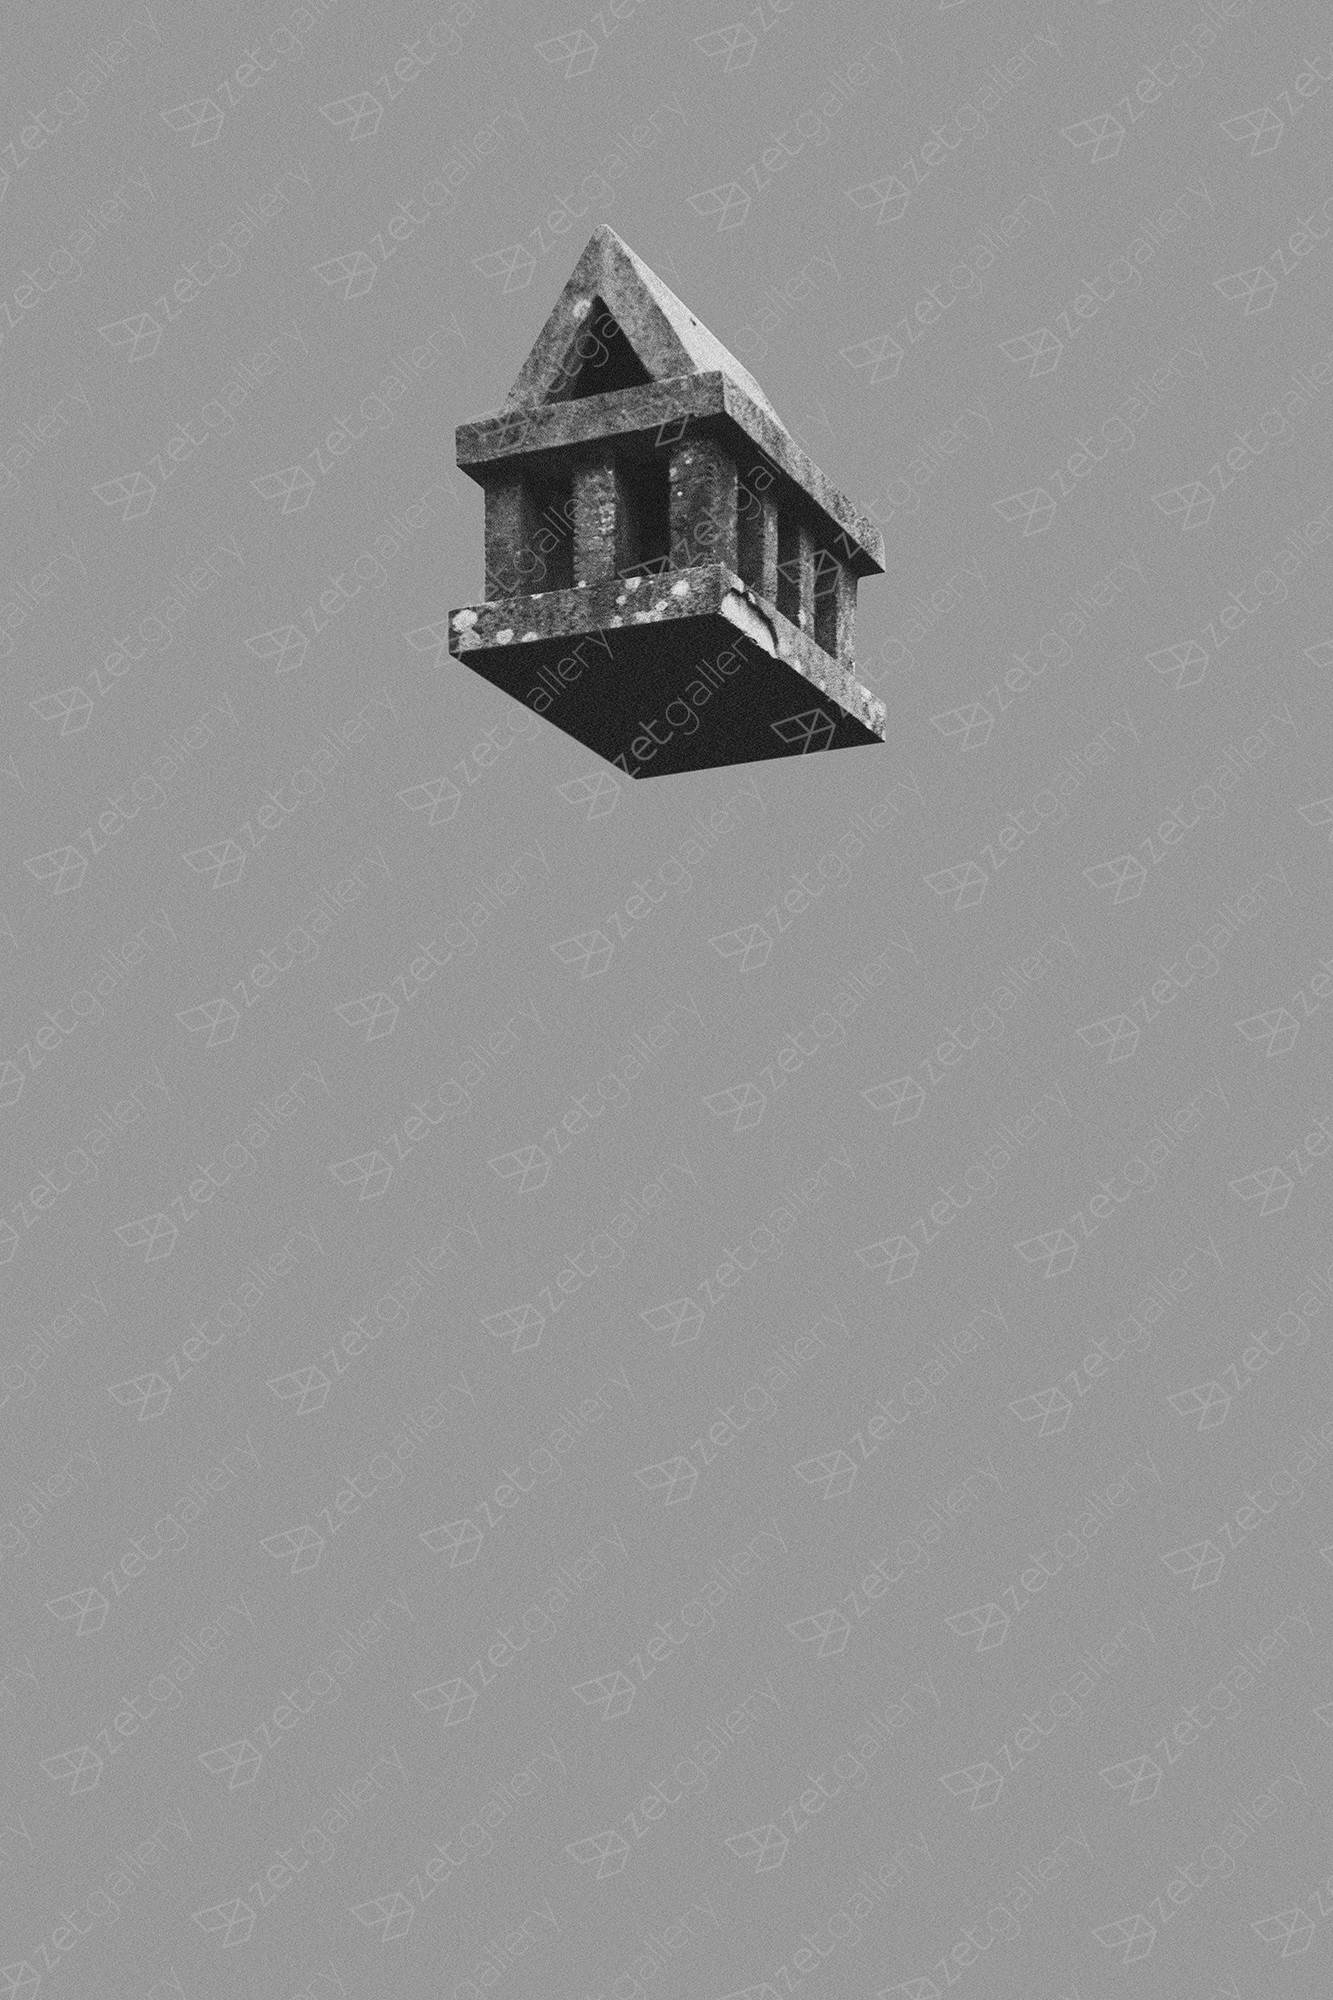 Casa do vento #1, Fotografia Digital Arquitetura original por Carlos Filipe Cavaleiro